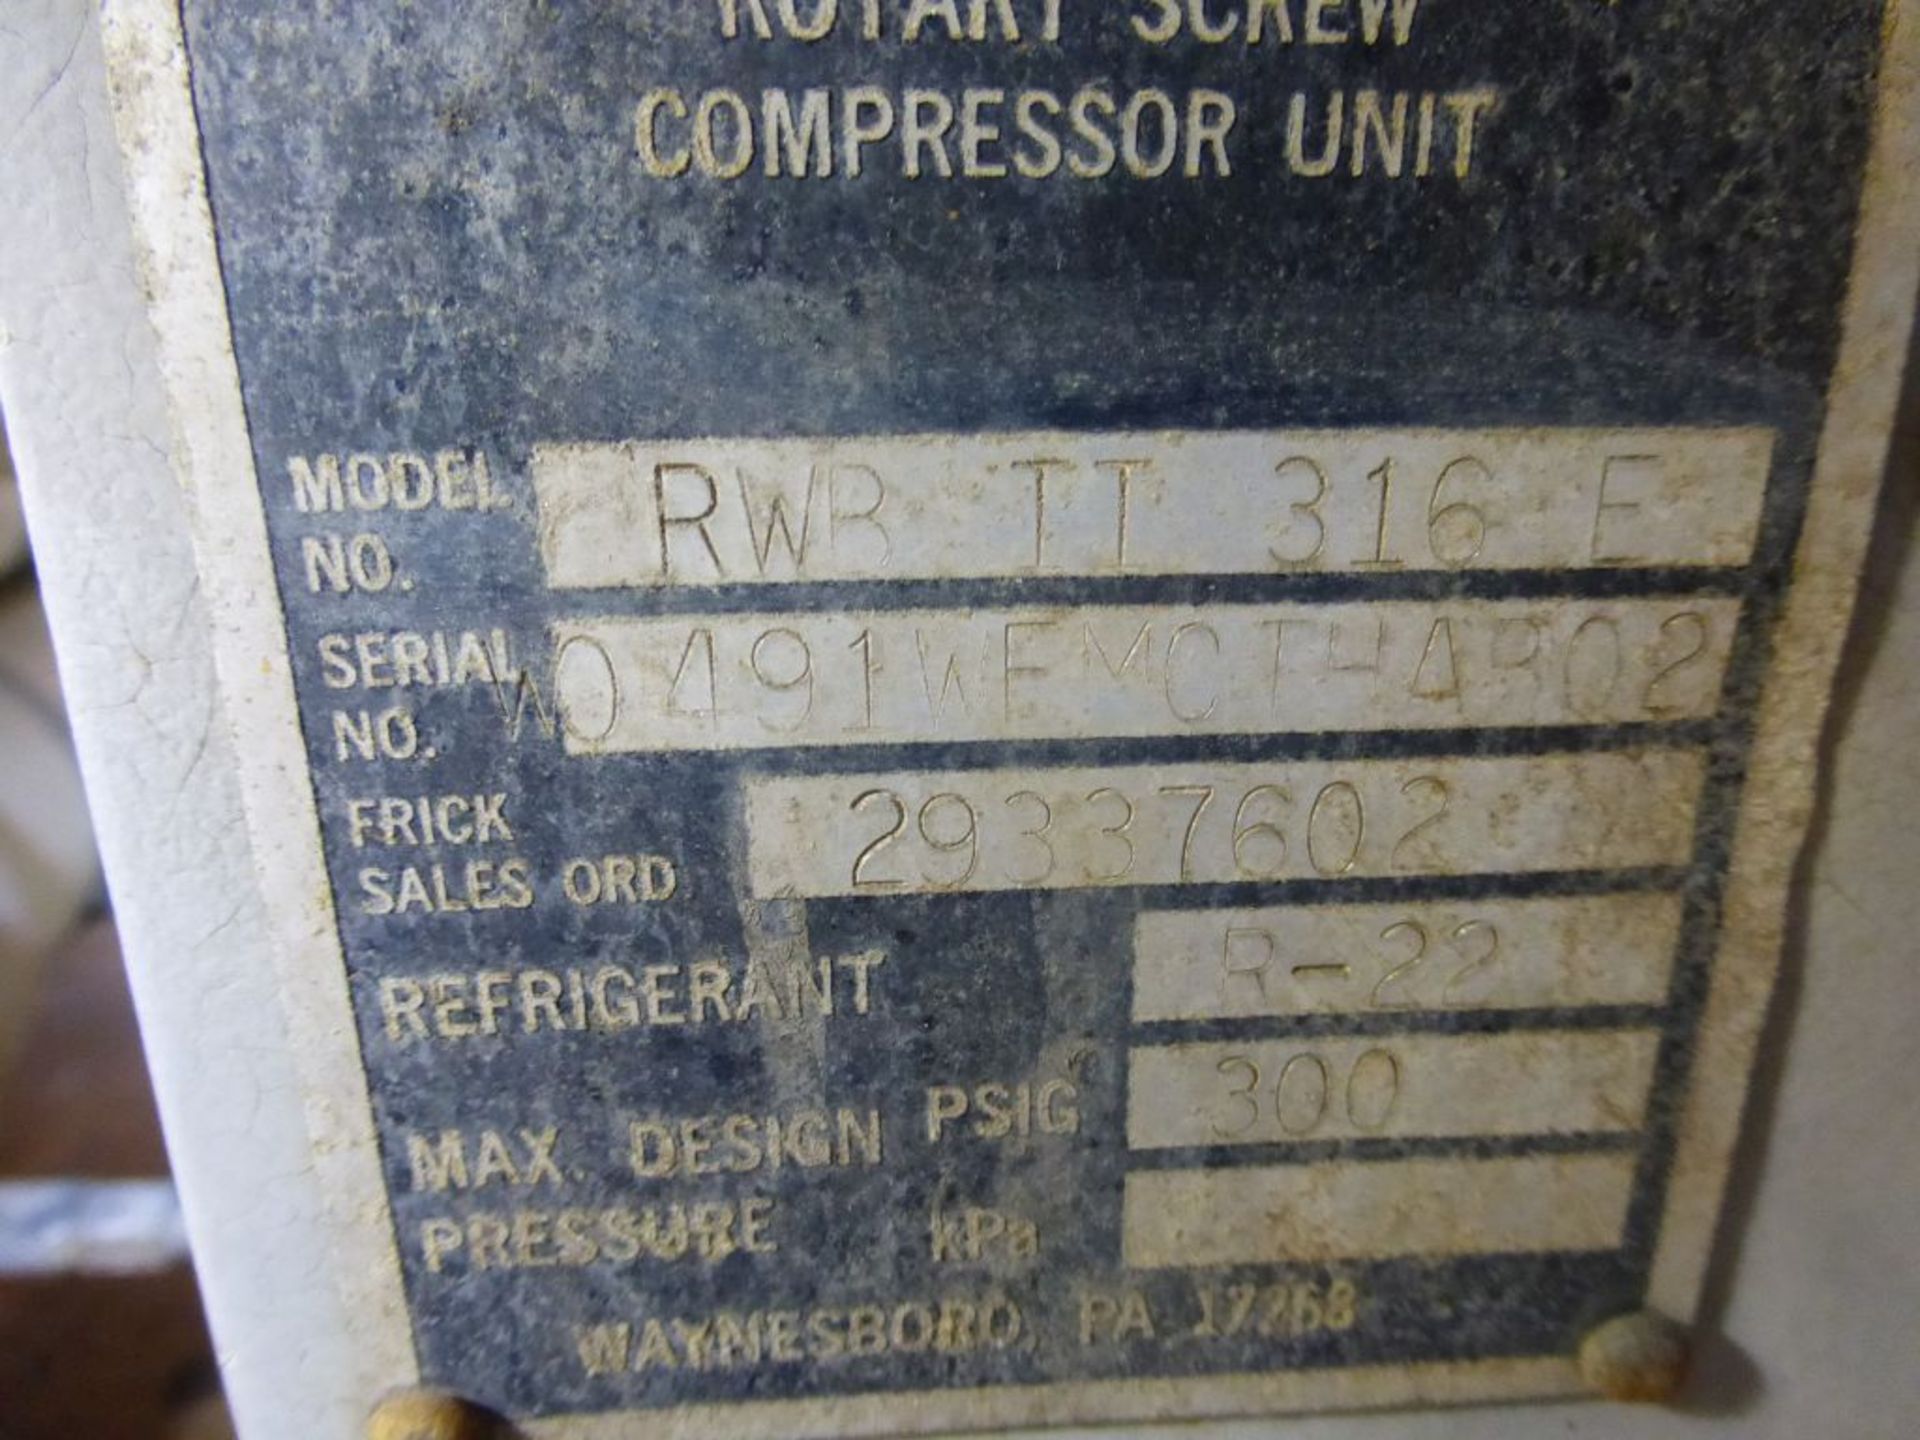 Frick Rotary Screw Compressor| Albany, NY - Model No. RWB 11 316E; 900 HP; 4000V; Hours on New - Image 13 of 15